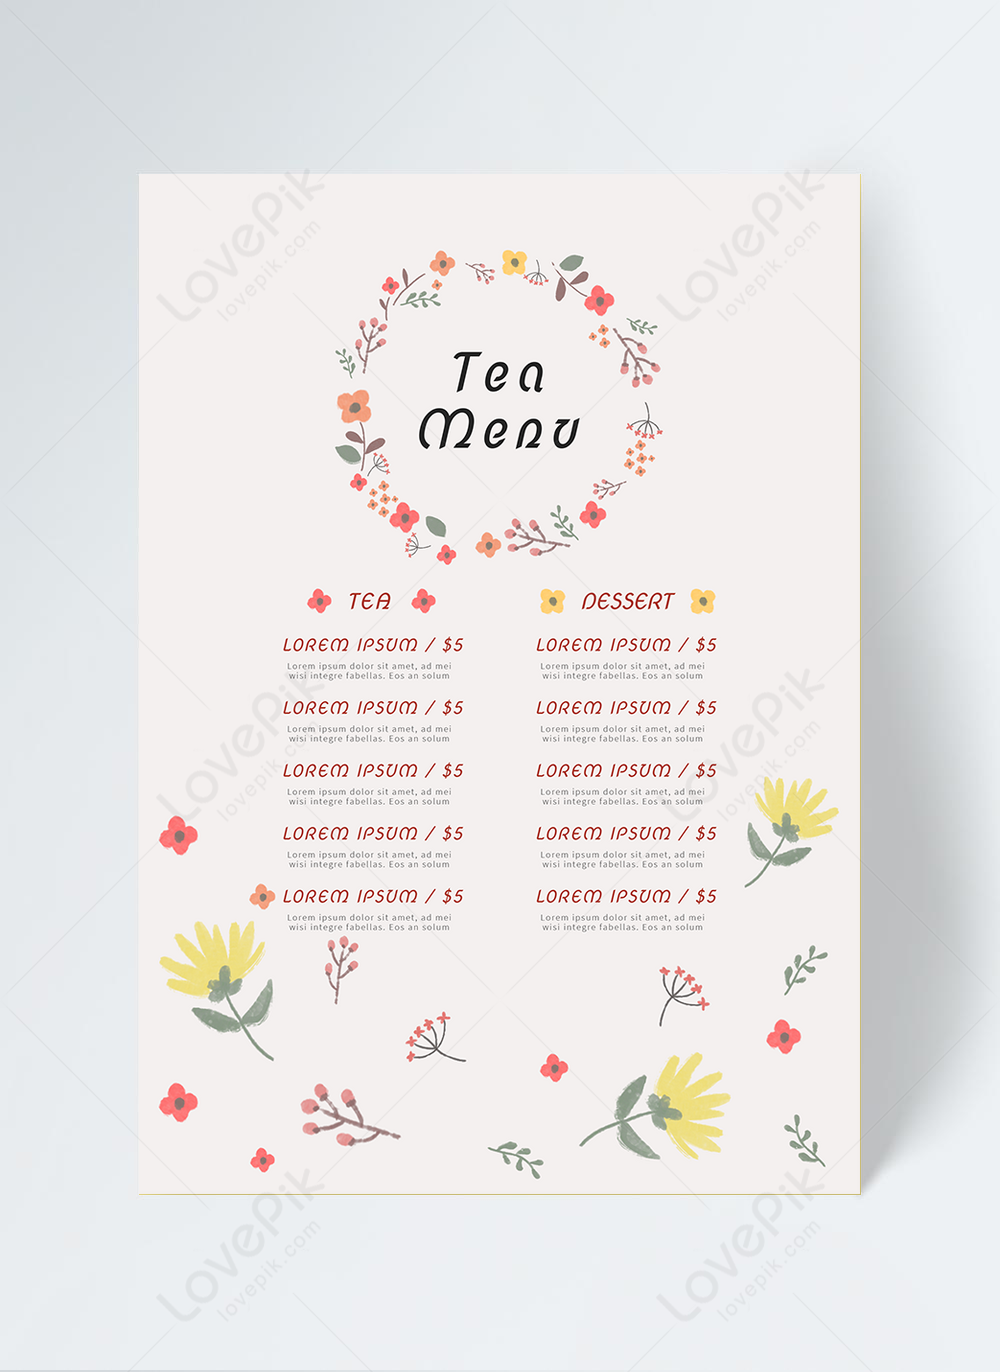 Simple flower afternoon tea tea illustration restaurant menu Within Editable Menu Templates Free